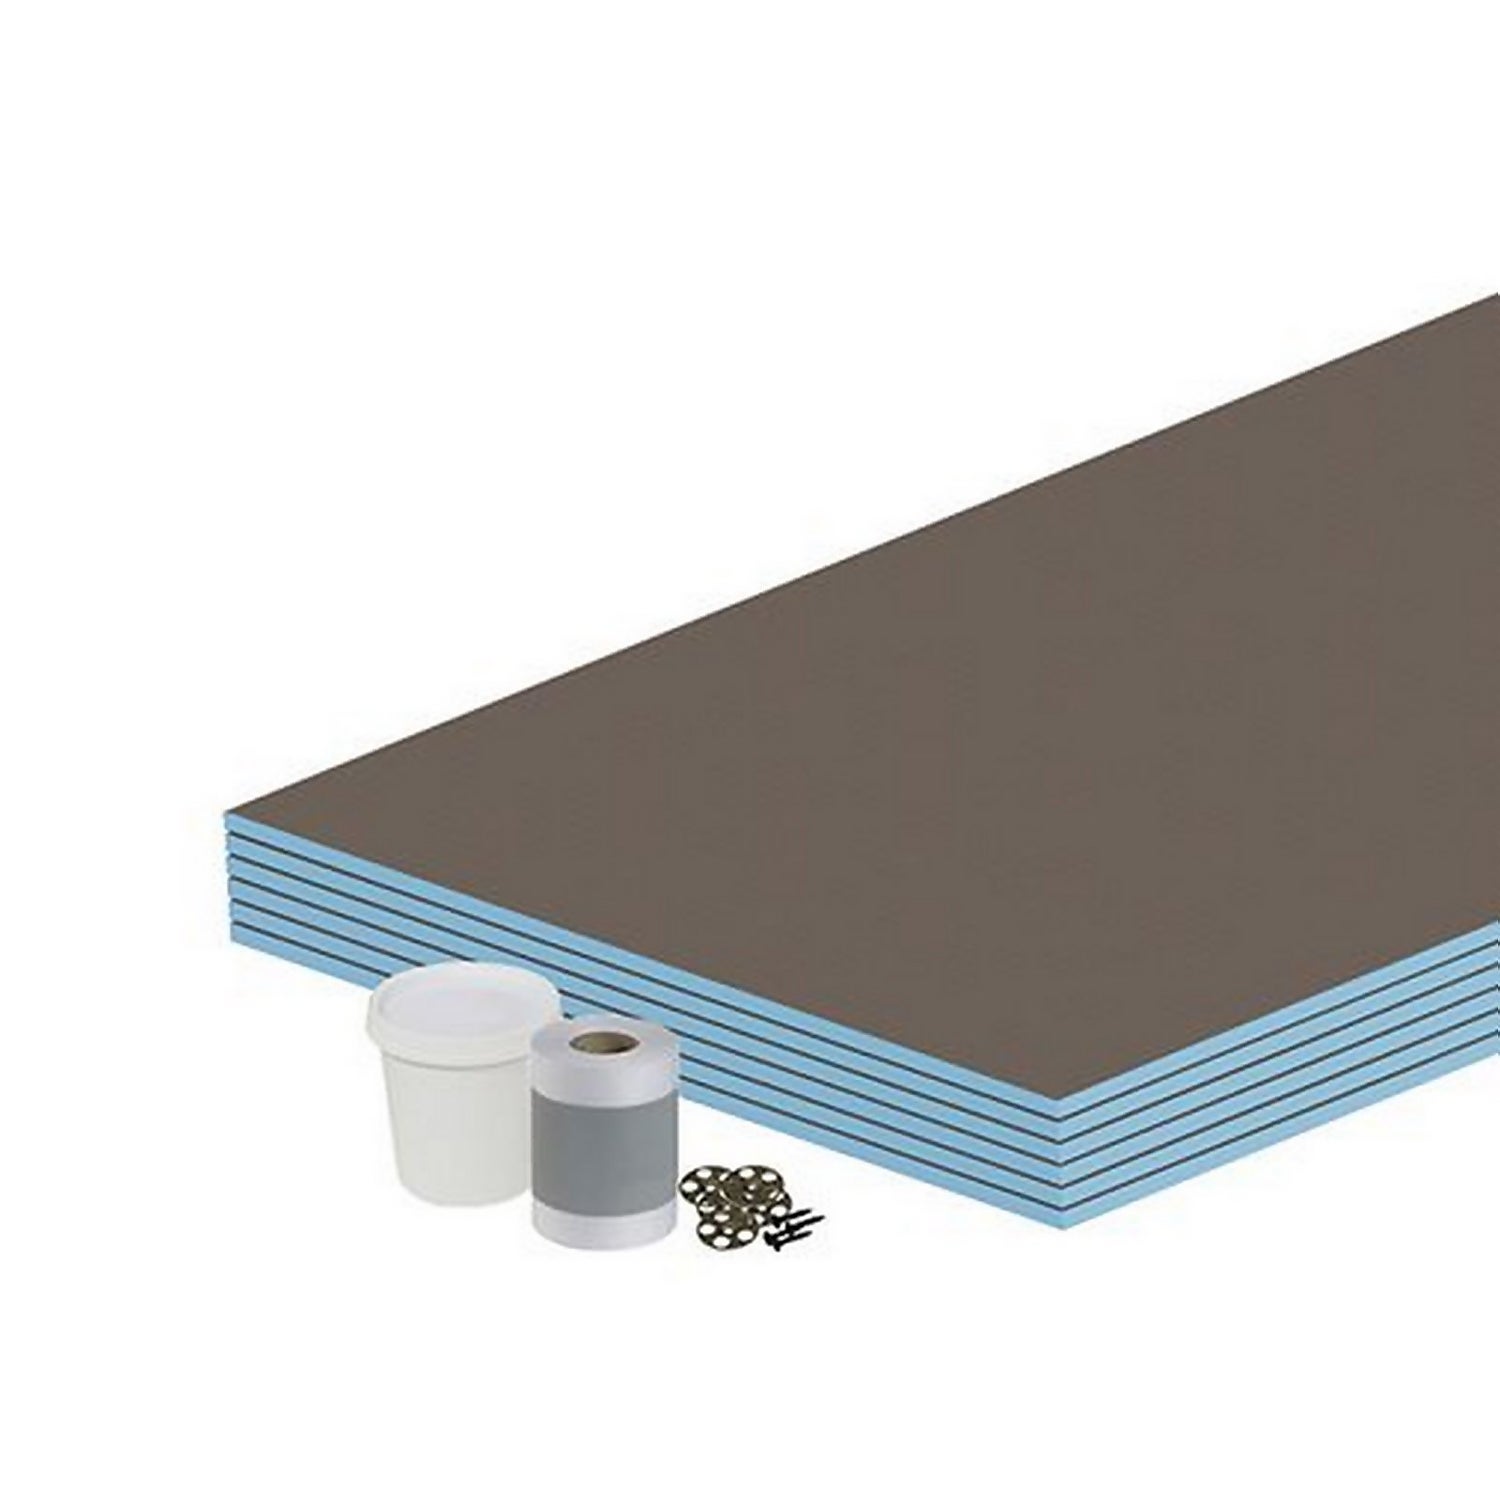 Wall Kit 12mm Tile Backer Board 4.32m2 for Wet room